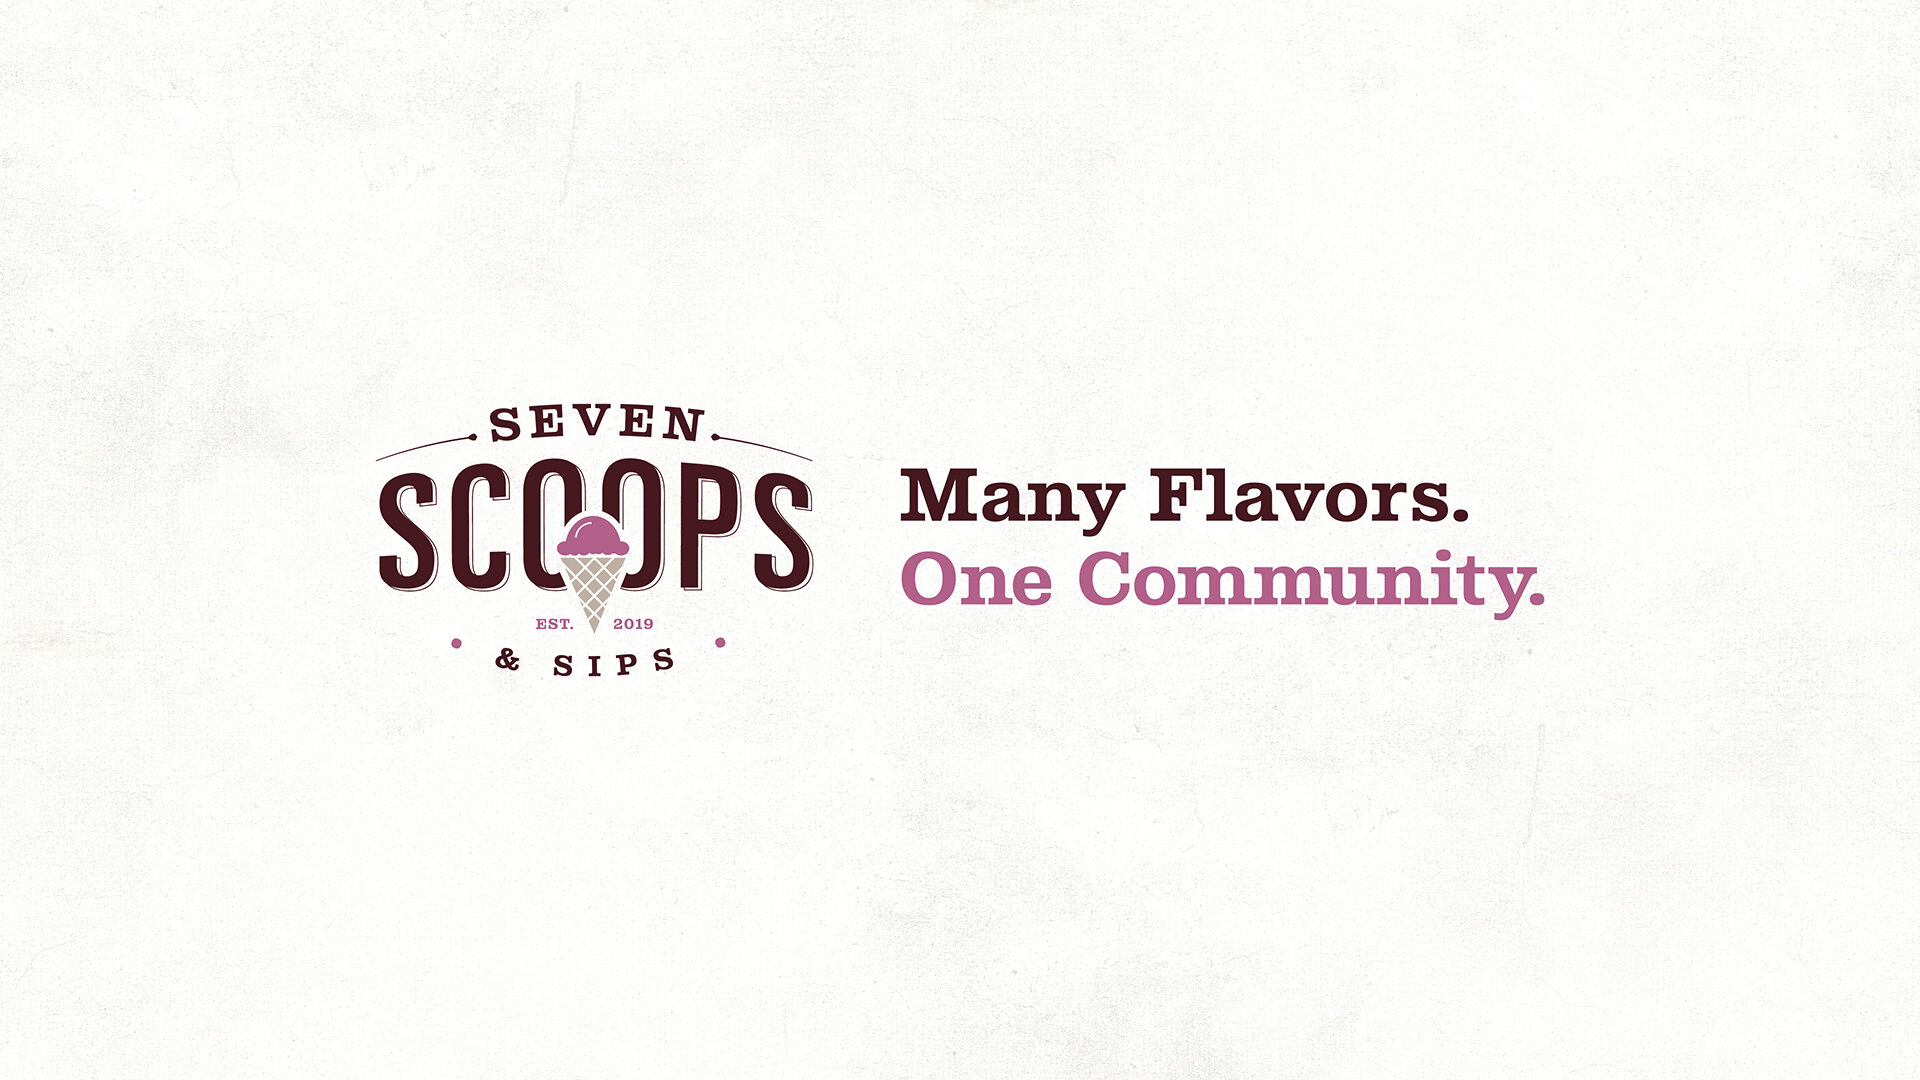 SevenScoops_Website_1.jpg